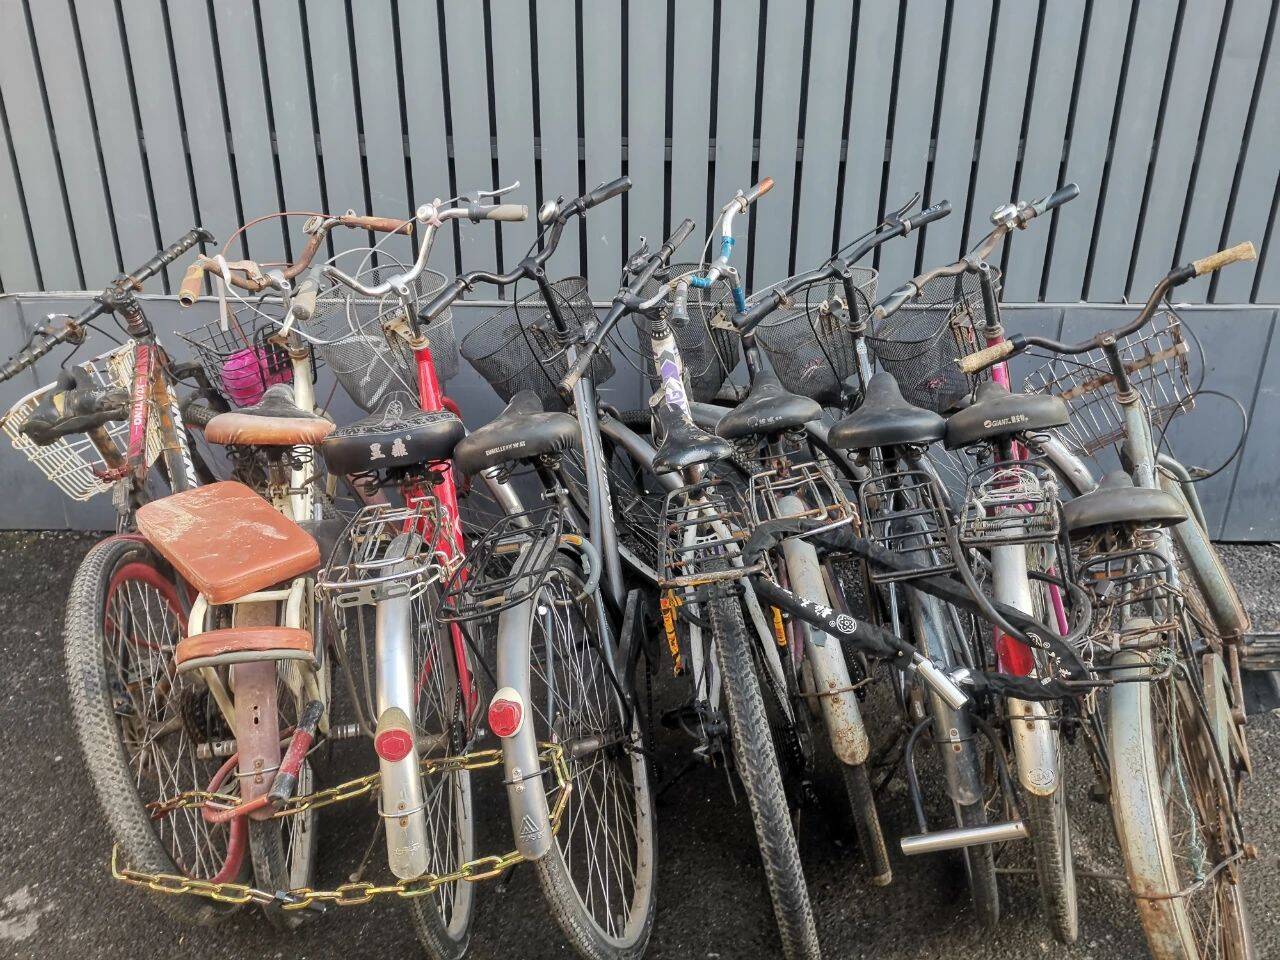 偷了九辆自行车的嫌疑人：这些车不算是我偷的，是他们自己没有上锁……